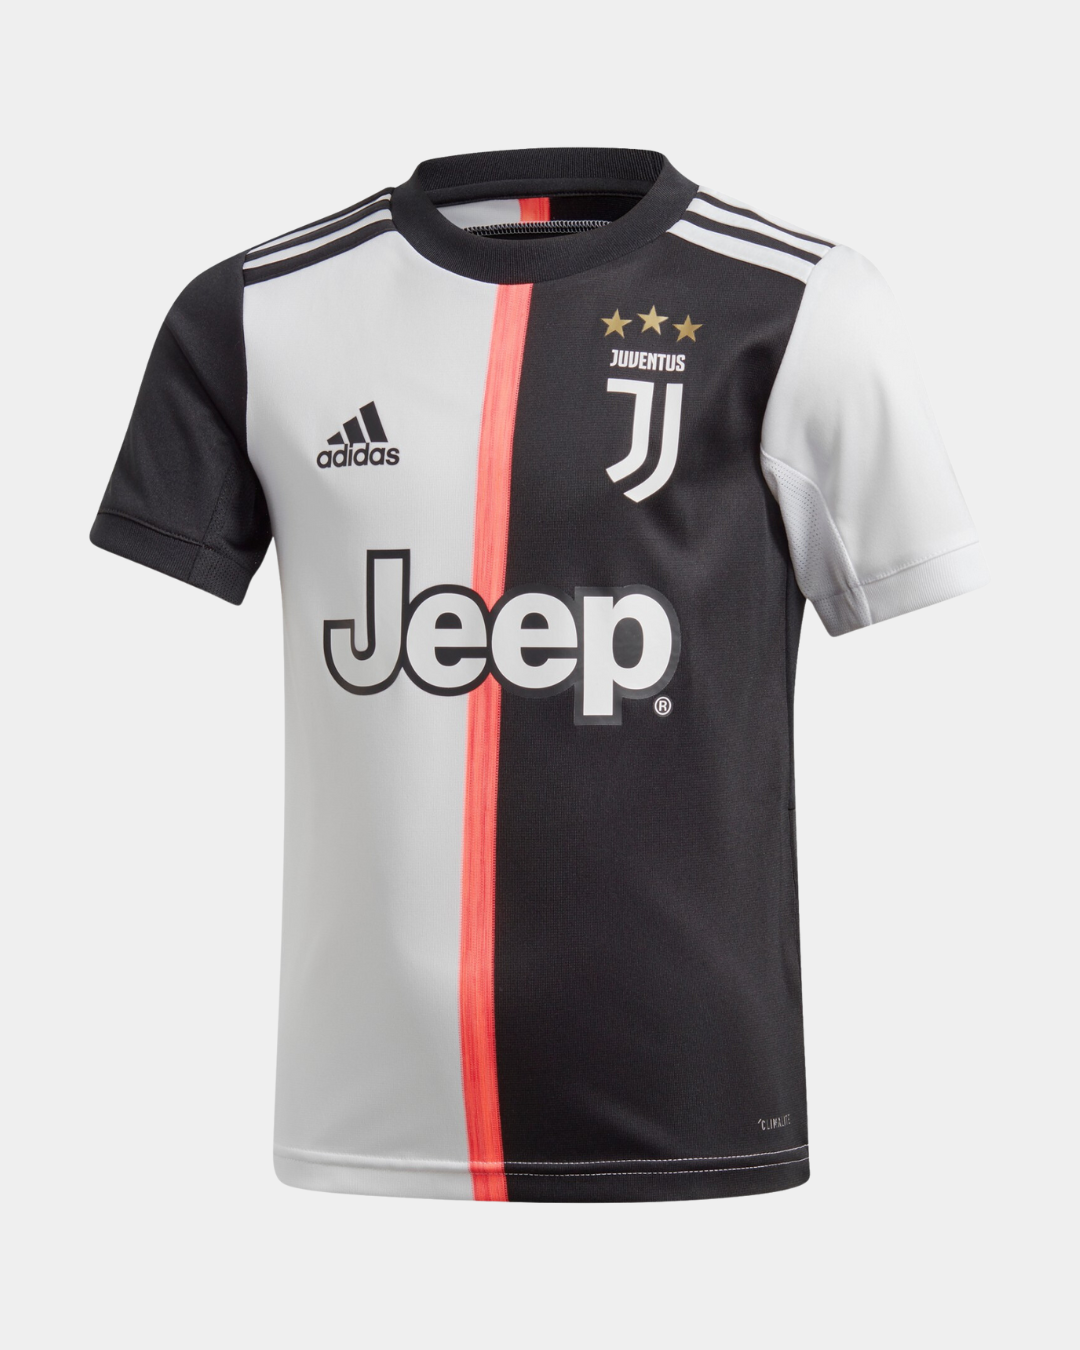 Juventus Kids Kit 2019/2020 - Black/White/Pink